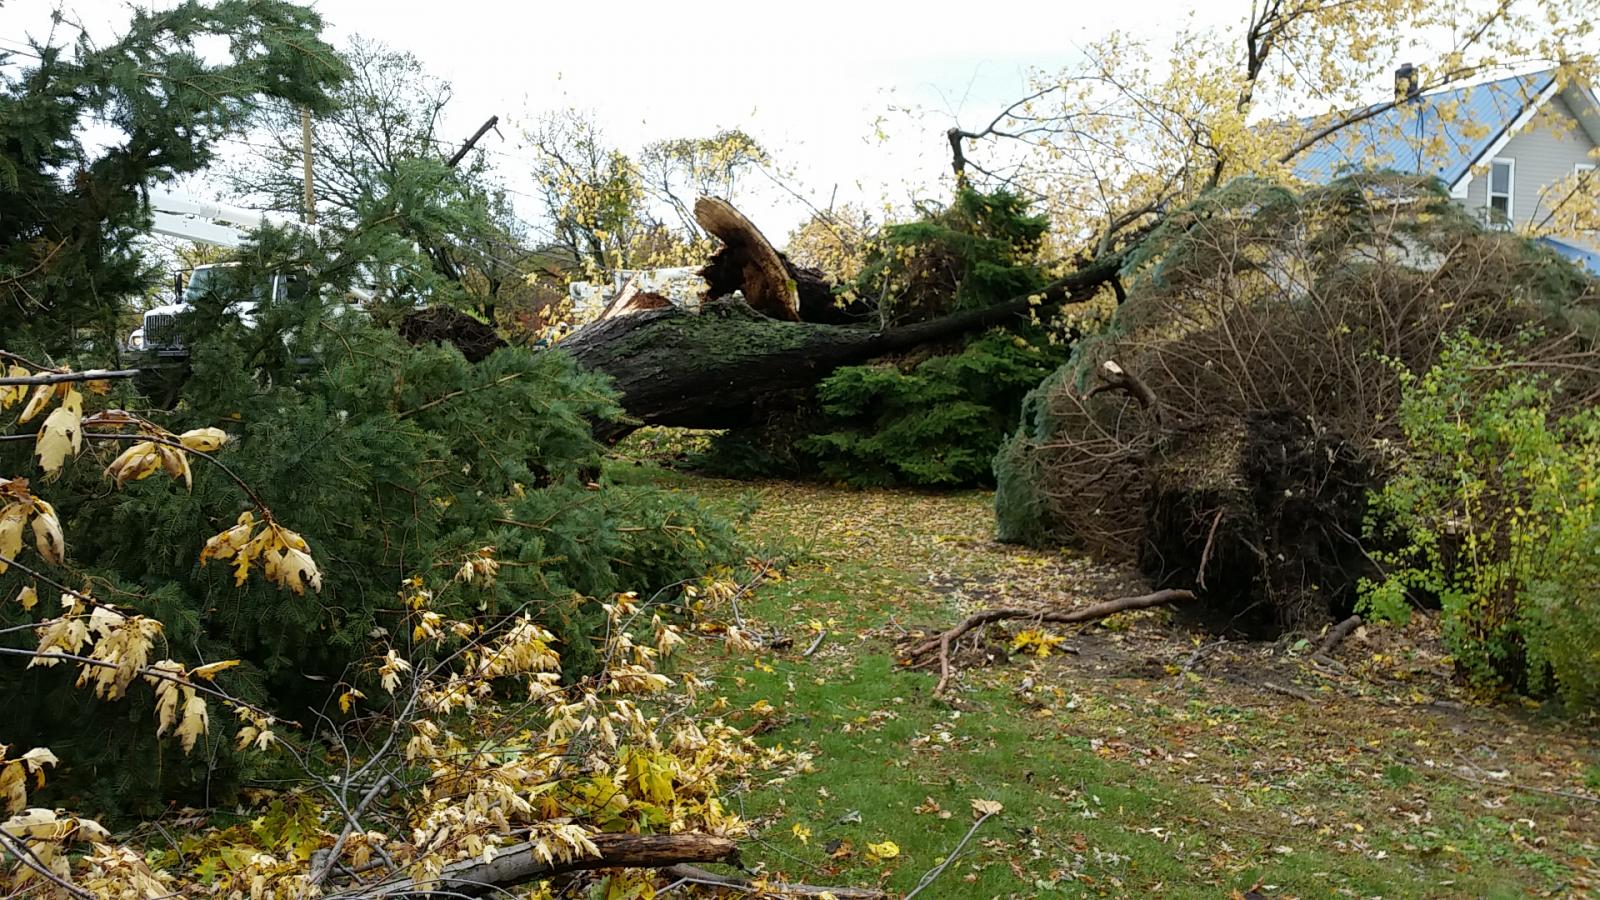 Tree damage in Milcreek PA, November 5 2017